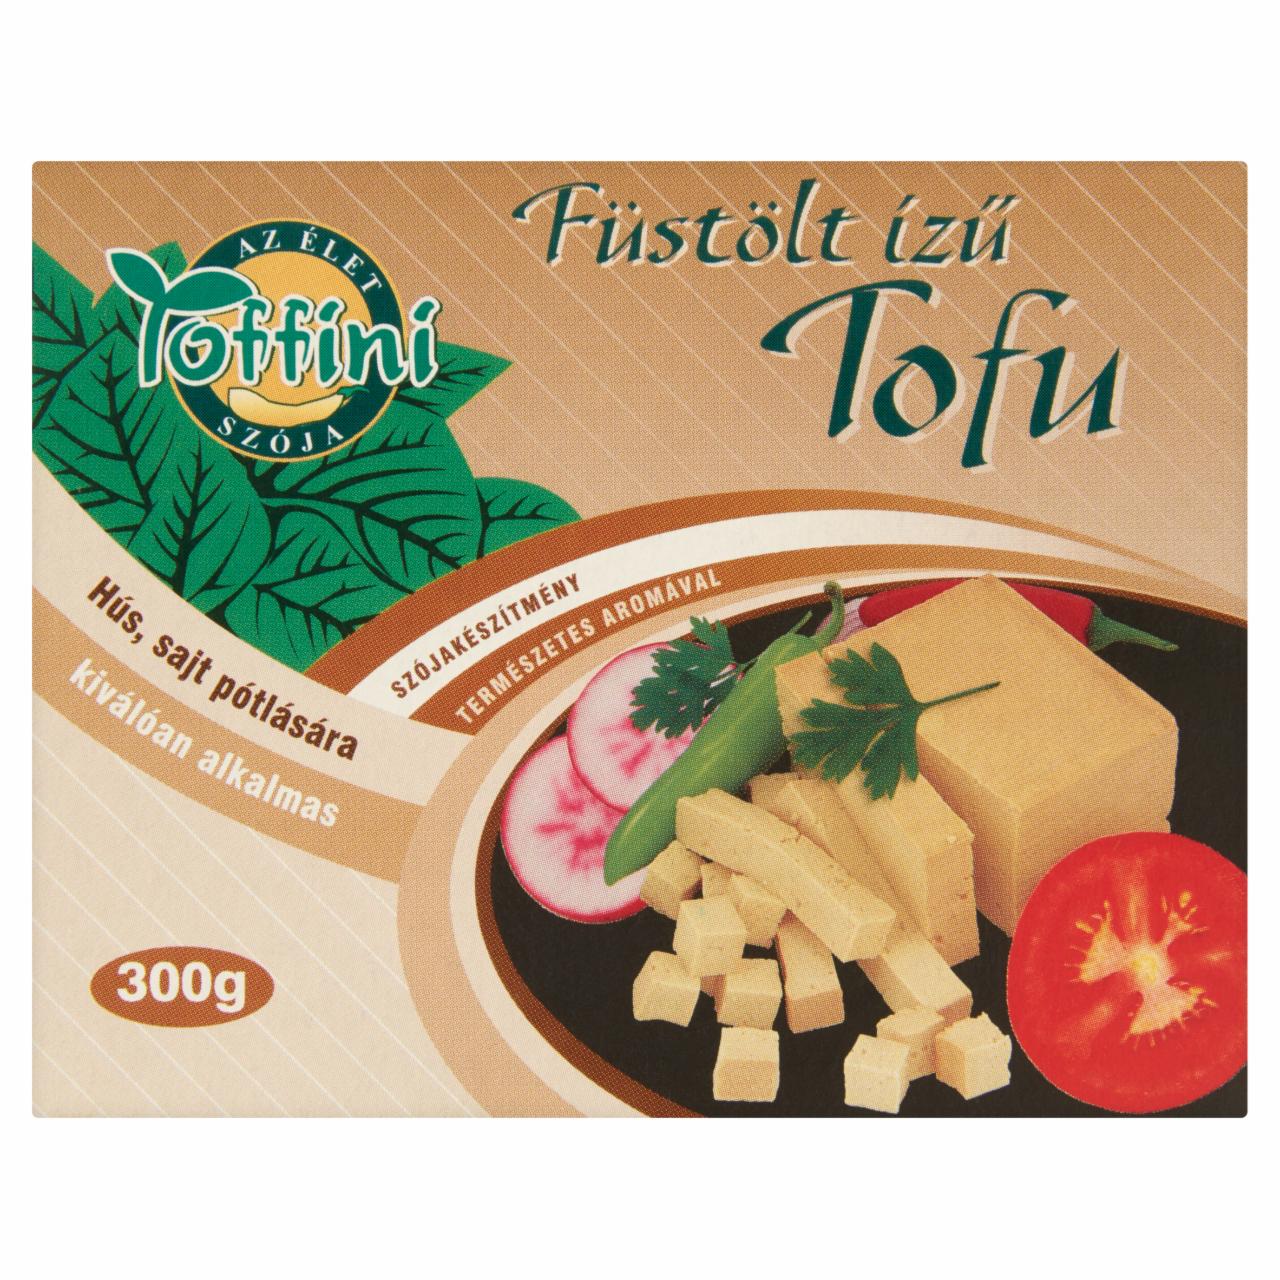 Képek - Toffini füstölt ízű tofu 300 g